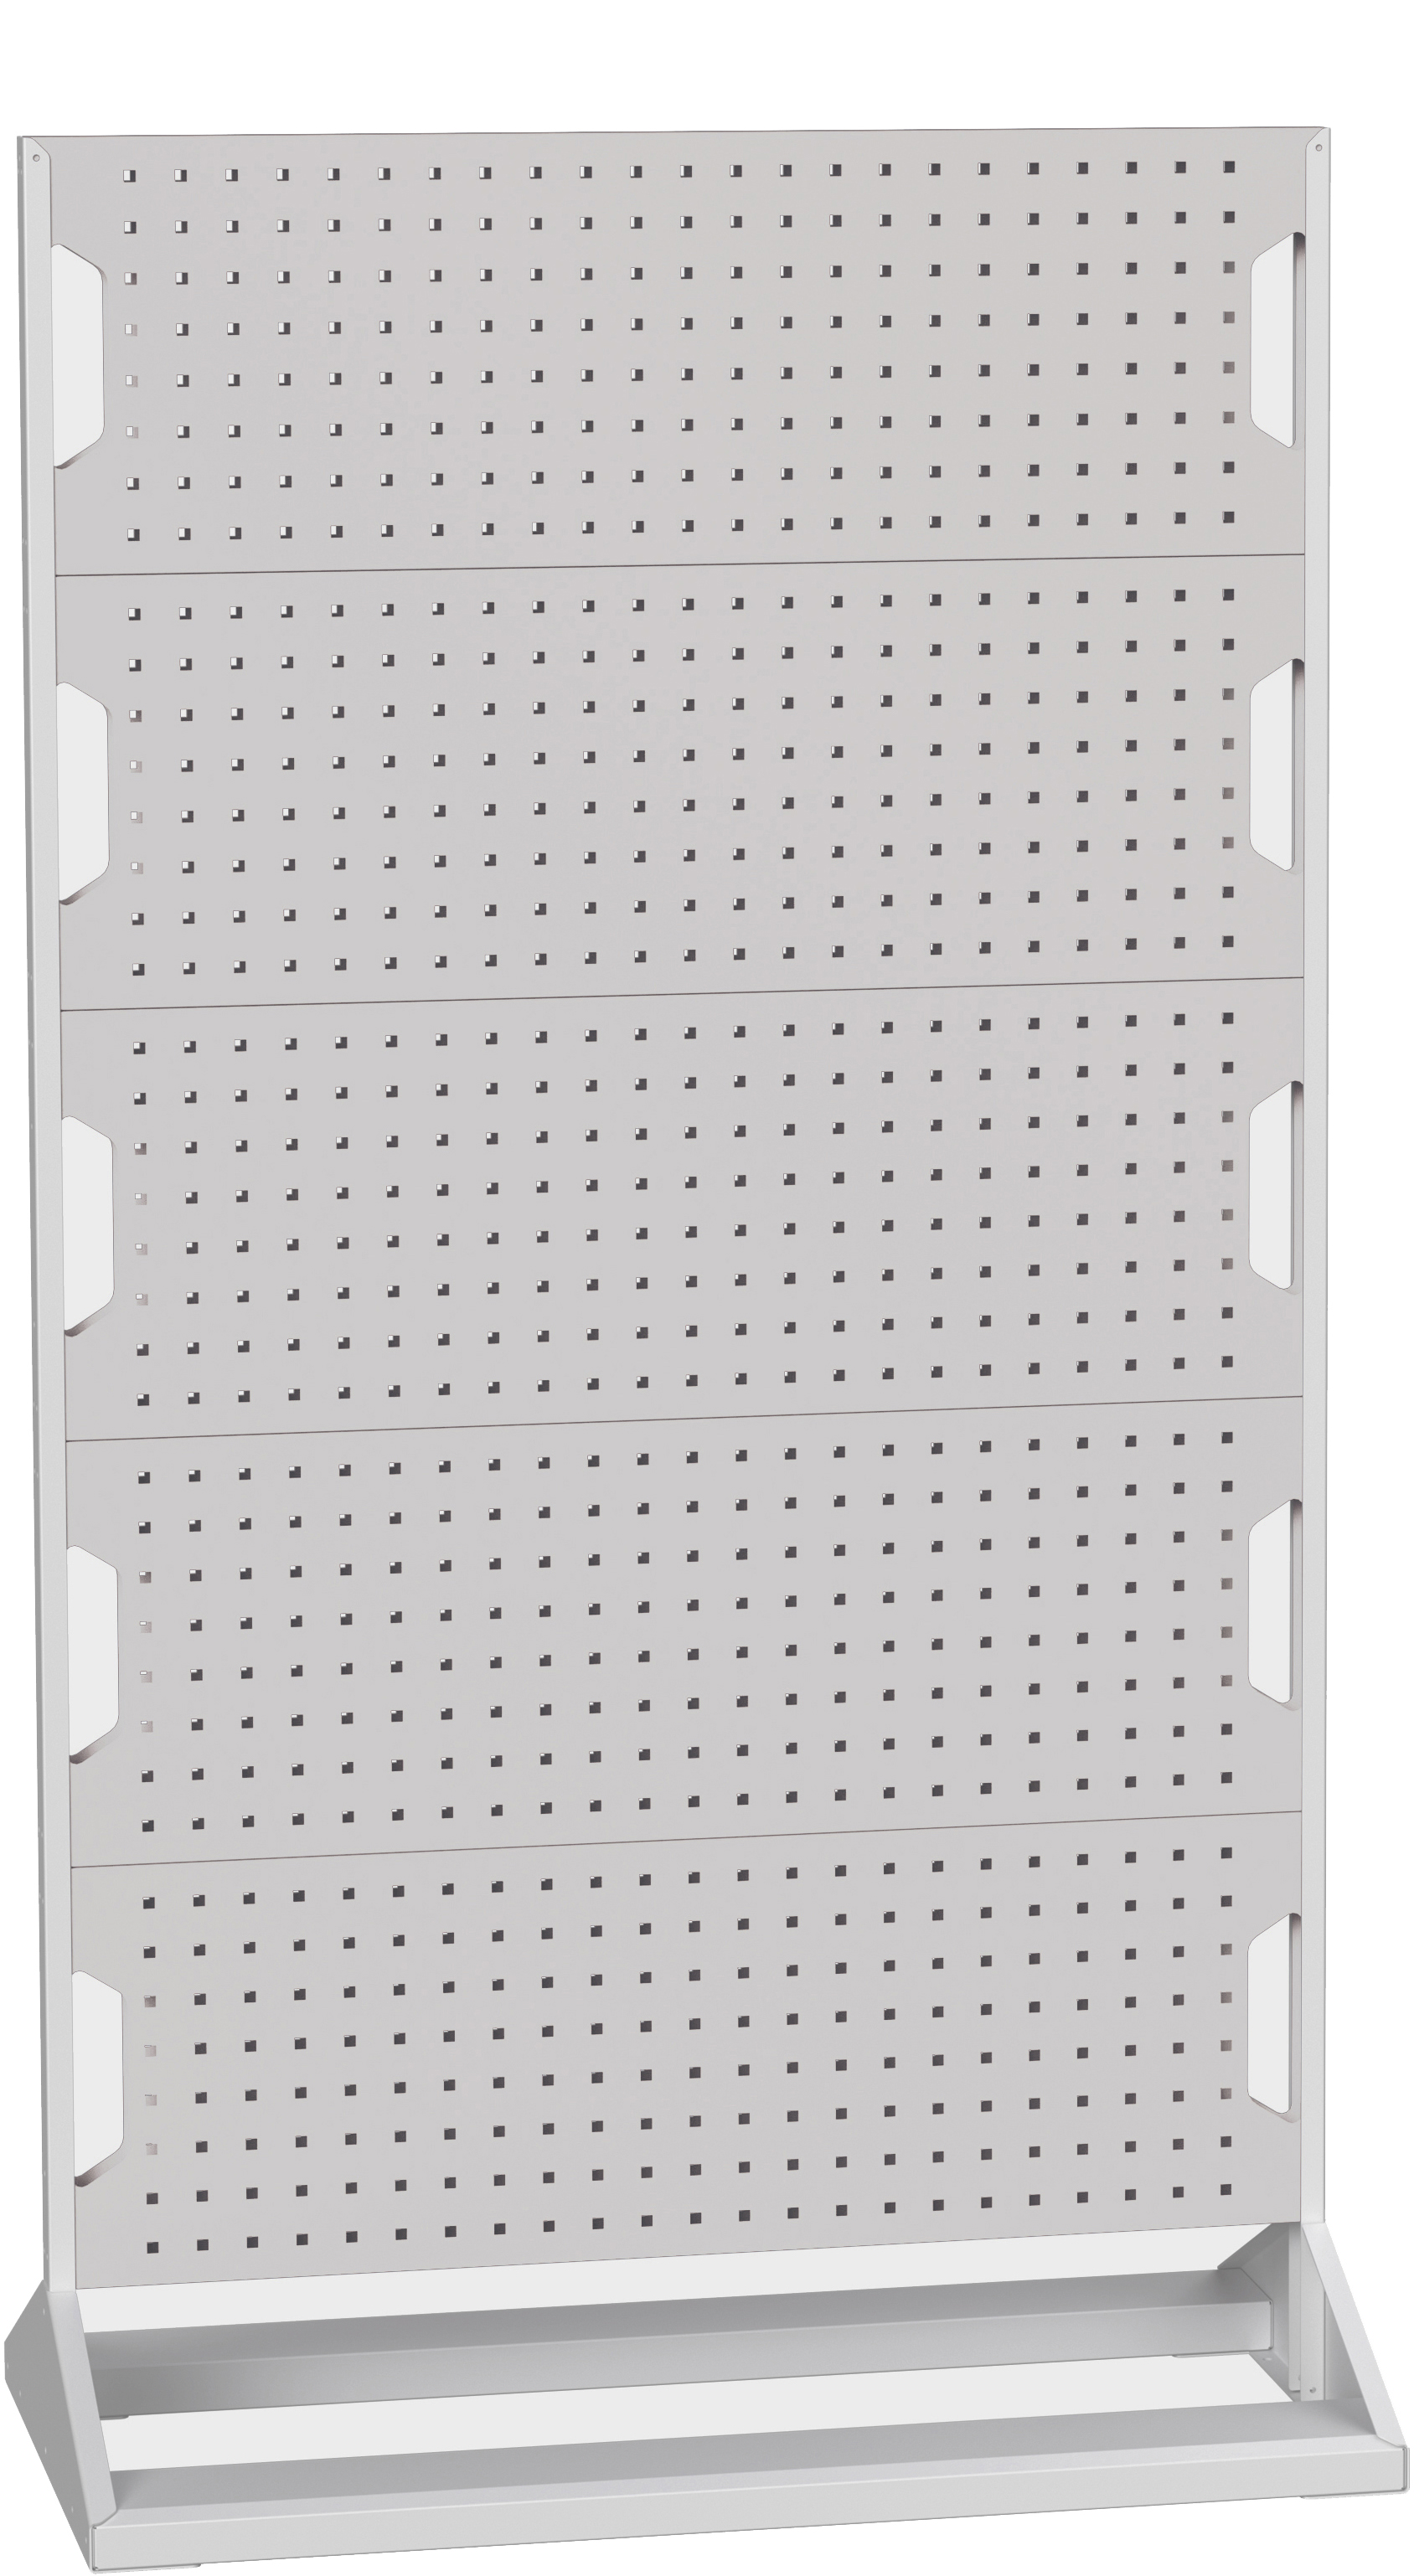 Bott Perfo Panel Rack (Double Sided) - 16917102.16V